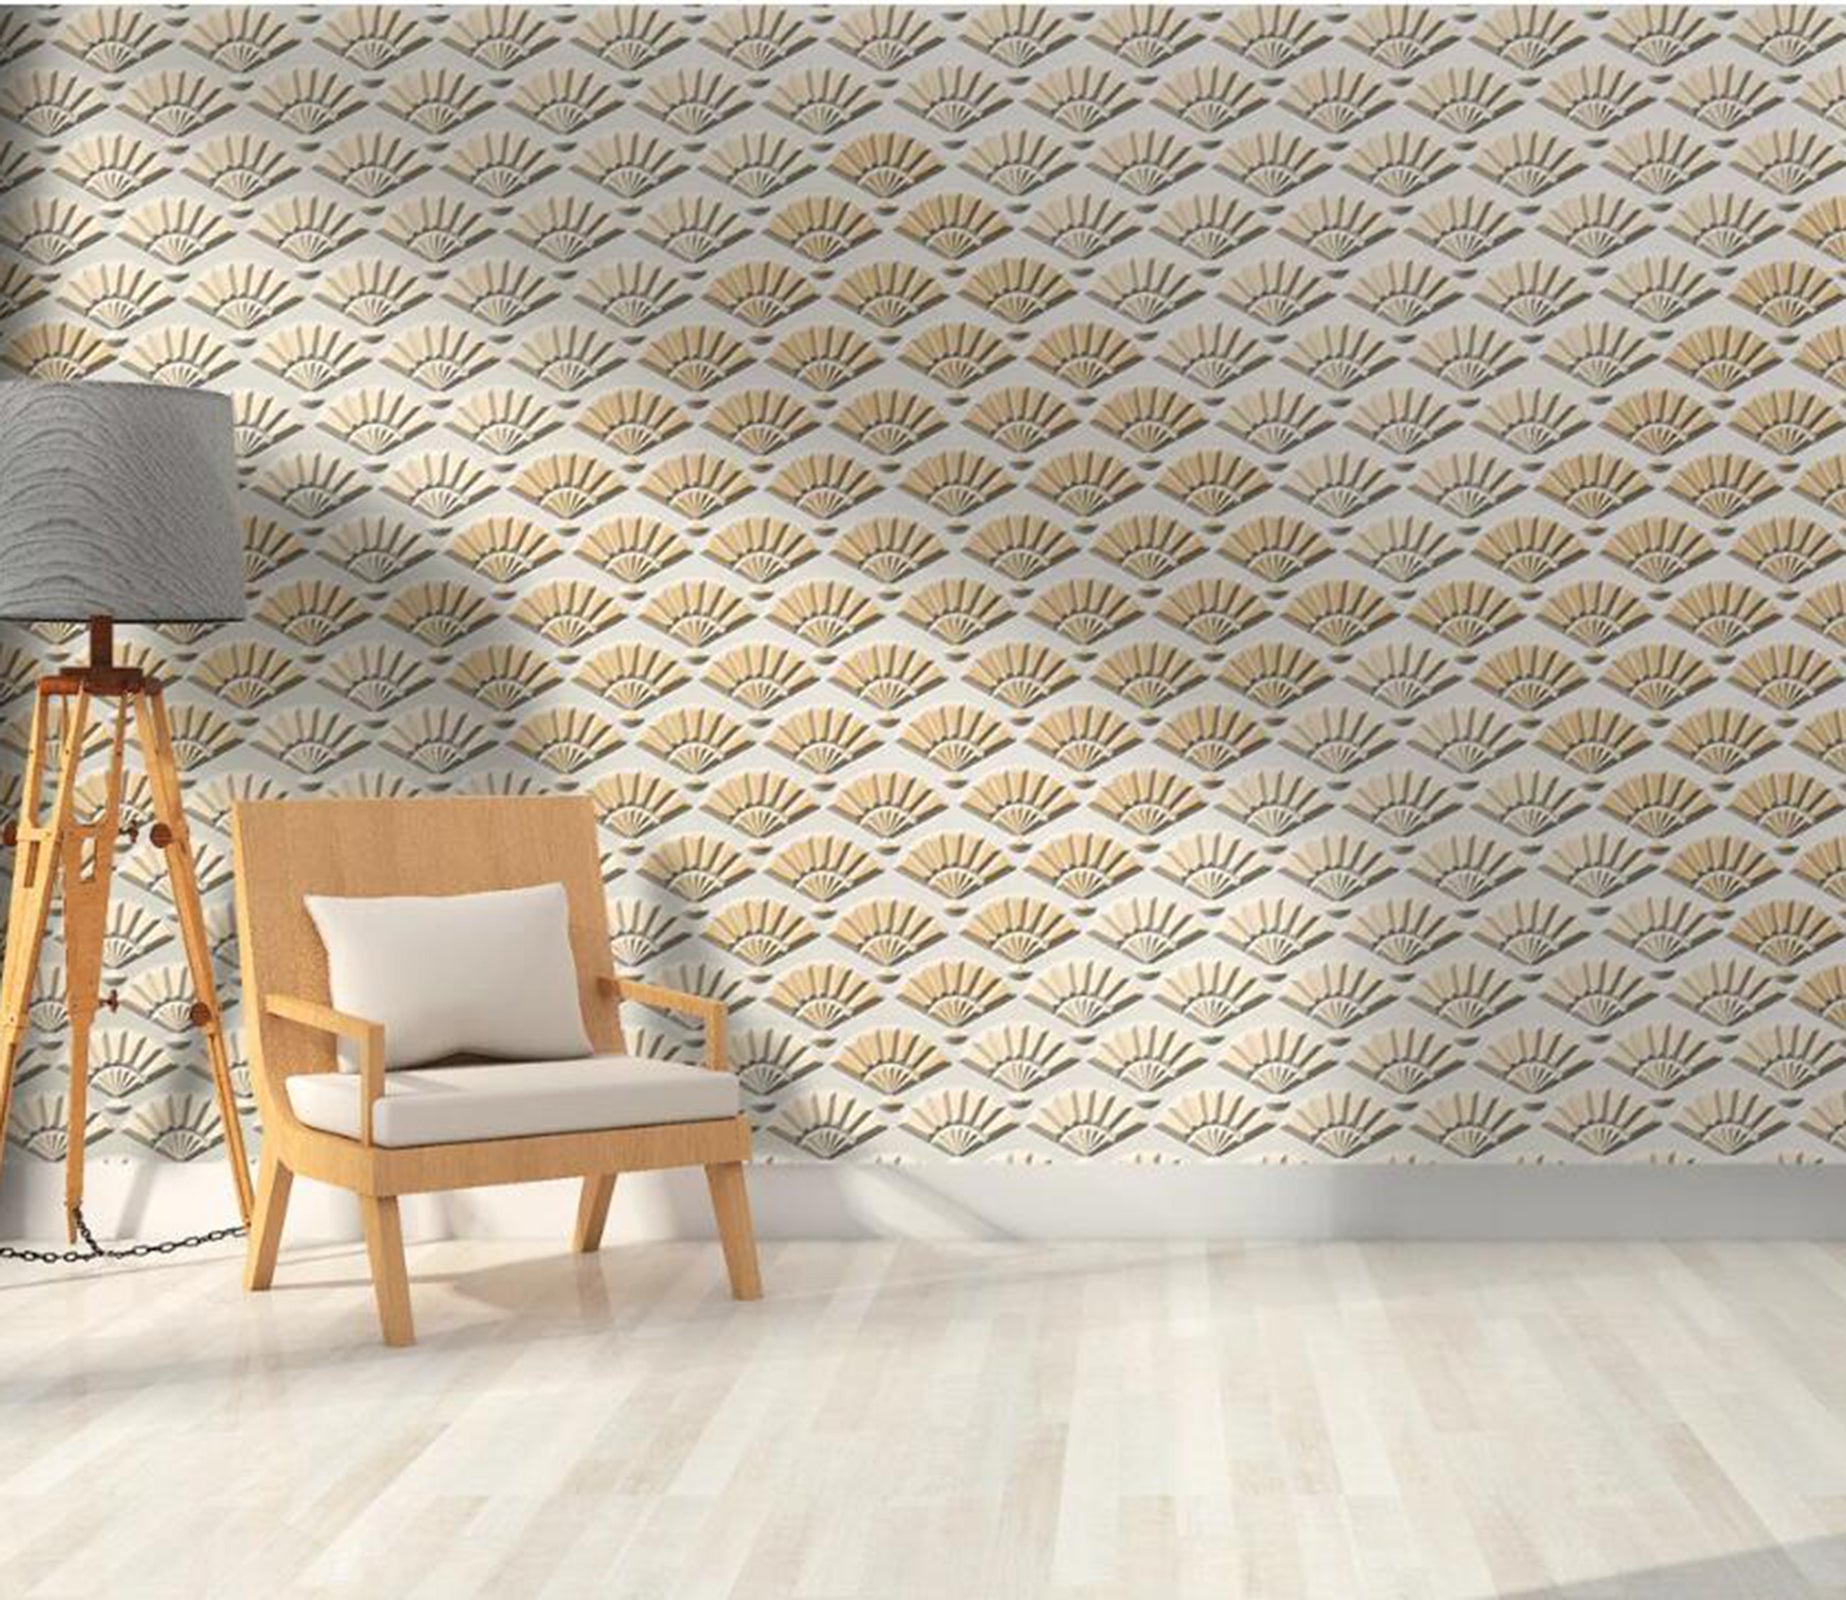 3D Fan Pattern WC90 Wall Murals Wallpaper AJ Wallpaper 2 